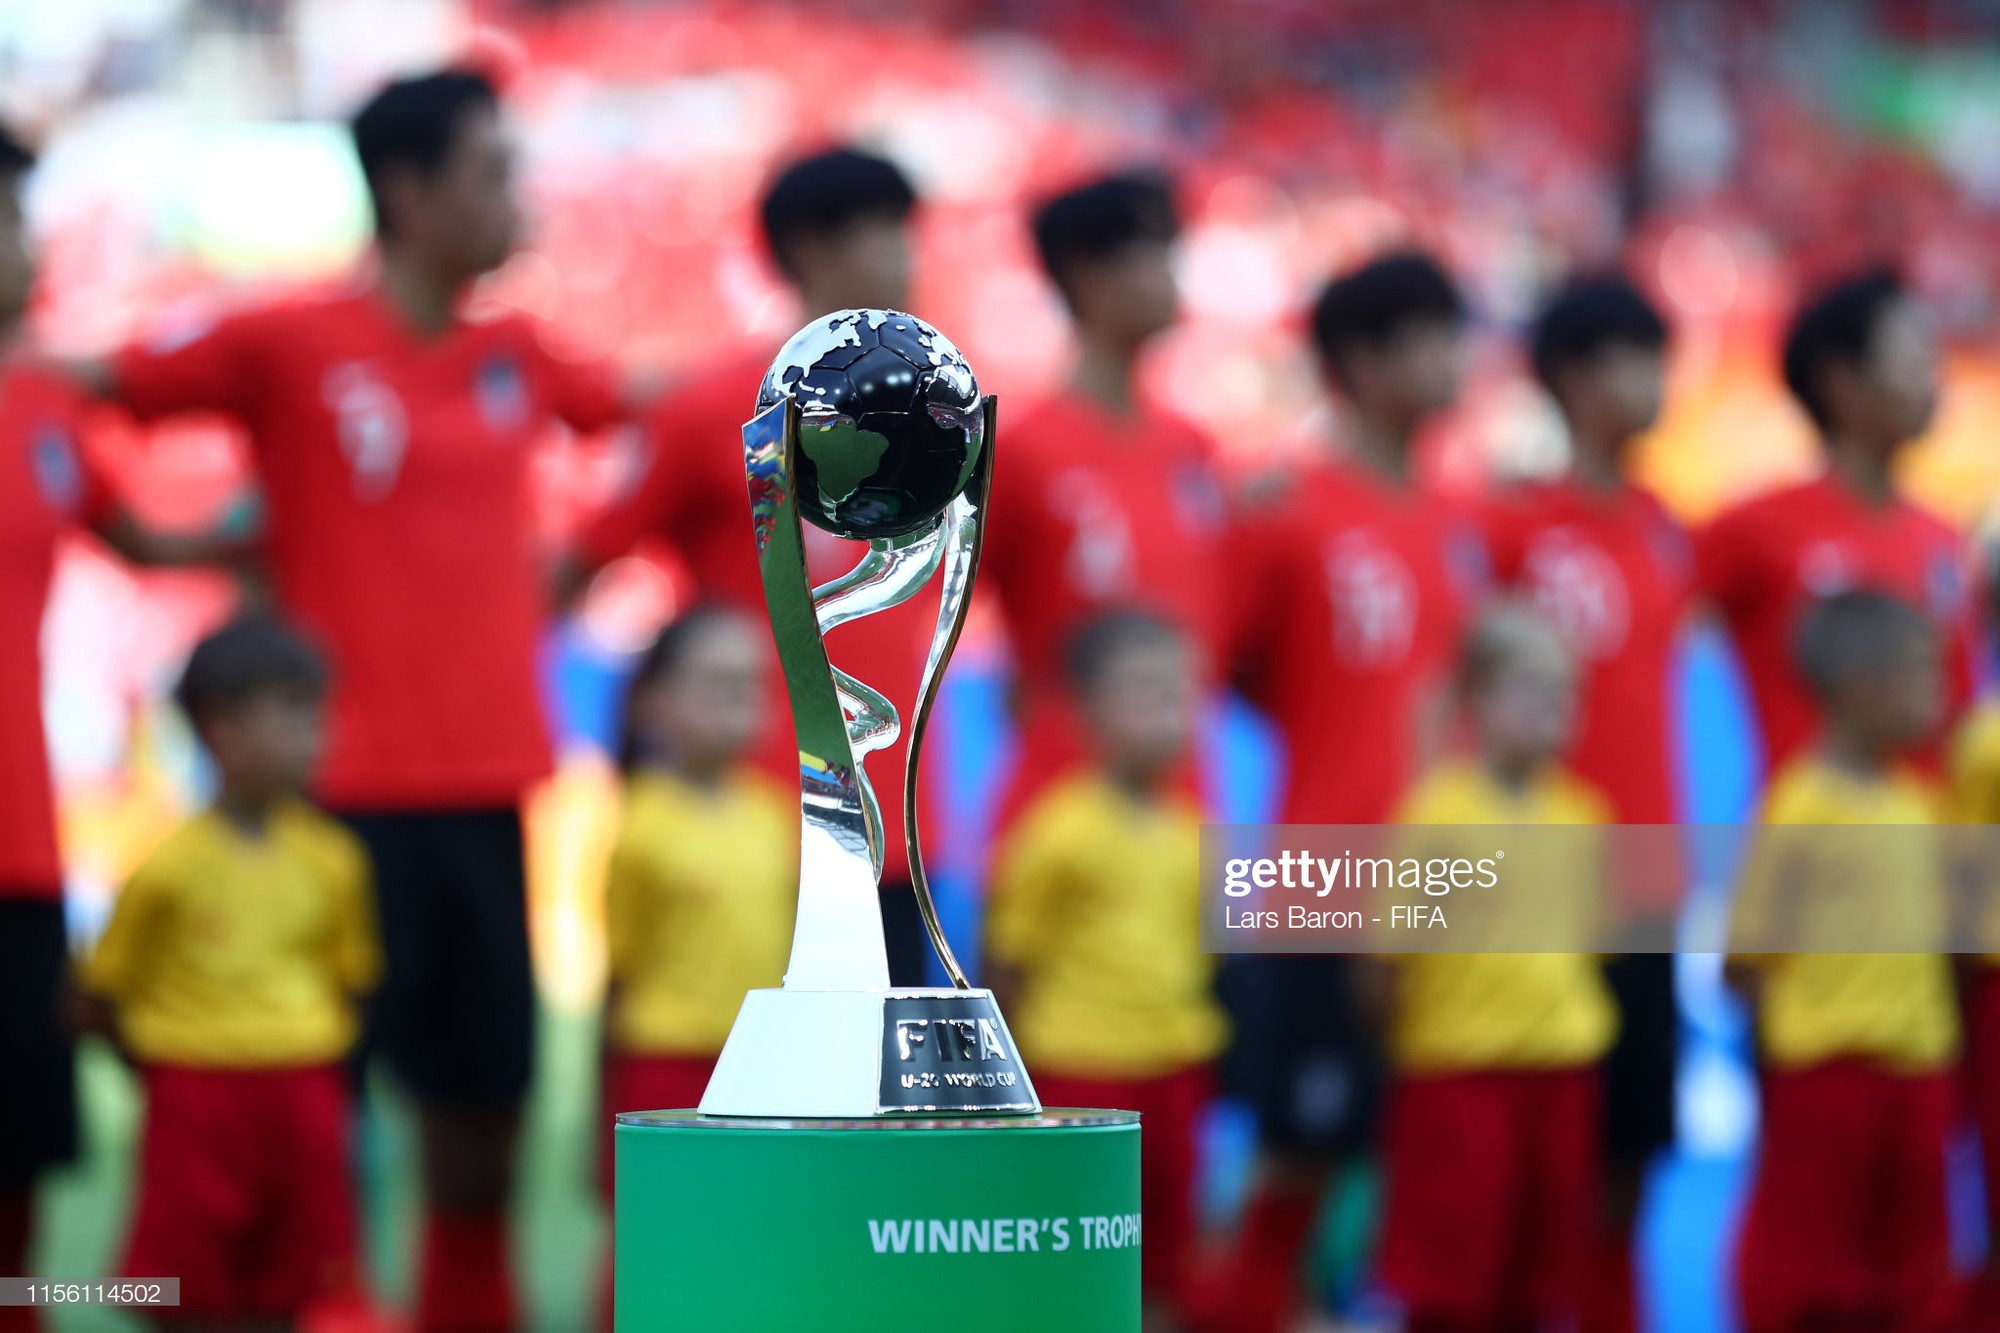 Đội bóng quê hương HLV Park Hang-seo ôm nhau khóc nấc khi thua ngược ở chung kết đấu trường World Cup - Ảnh 2.